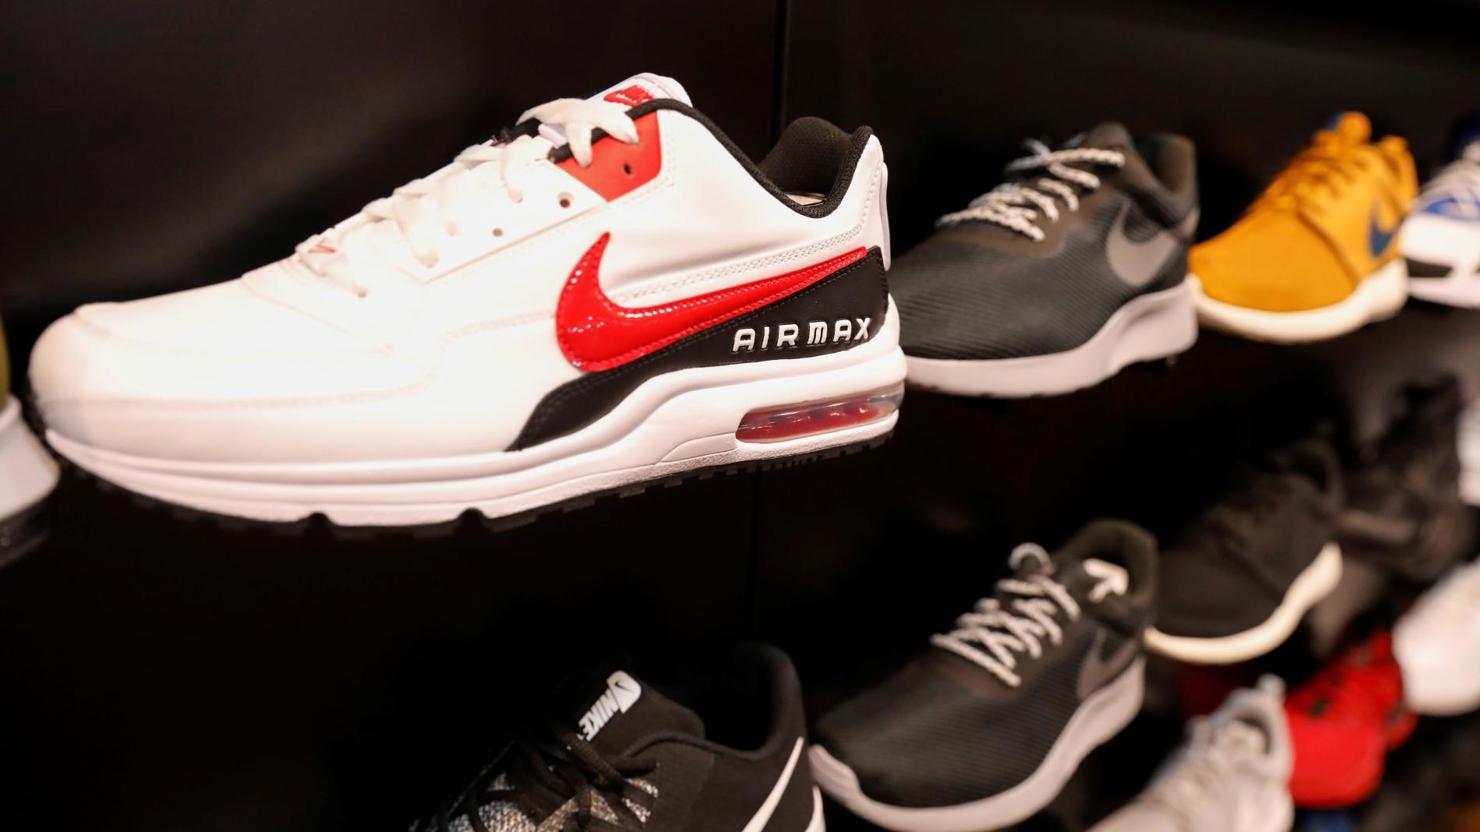 Các thương hiệu giày nổi tiếng như Nike, Adidas, Puma, Converse, Crocs,… đồng loạt phản đối việc chính phủ áp thuế lên các sản phẩm da giày trong nhóm 300 tỷ USD hàng hóa Trung Quốc. Nguồn: Reuters.